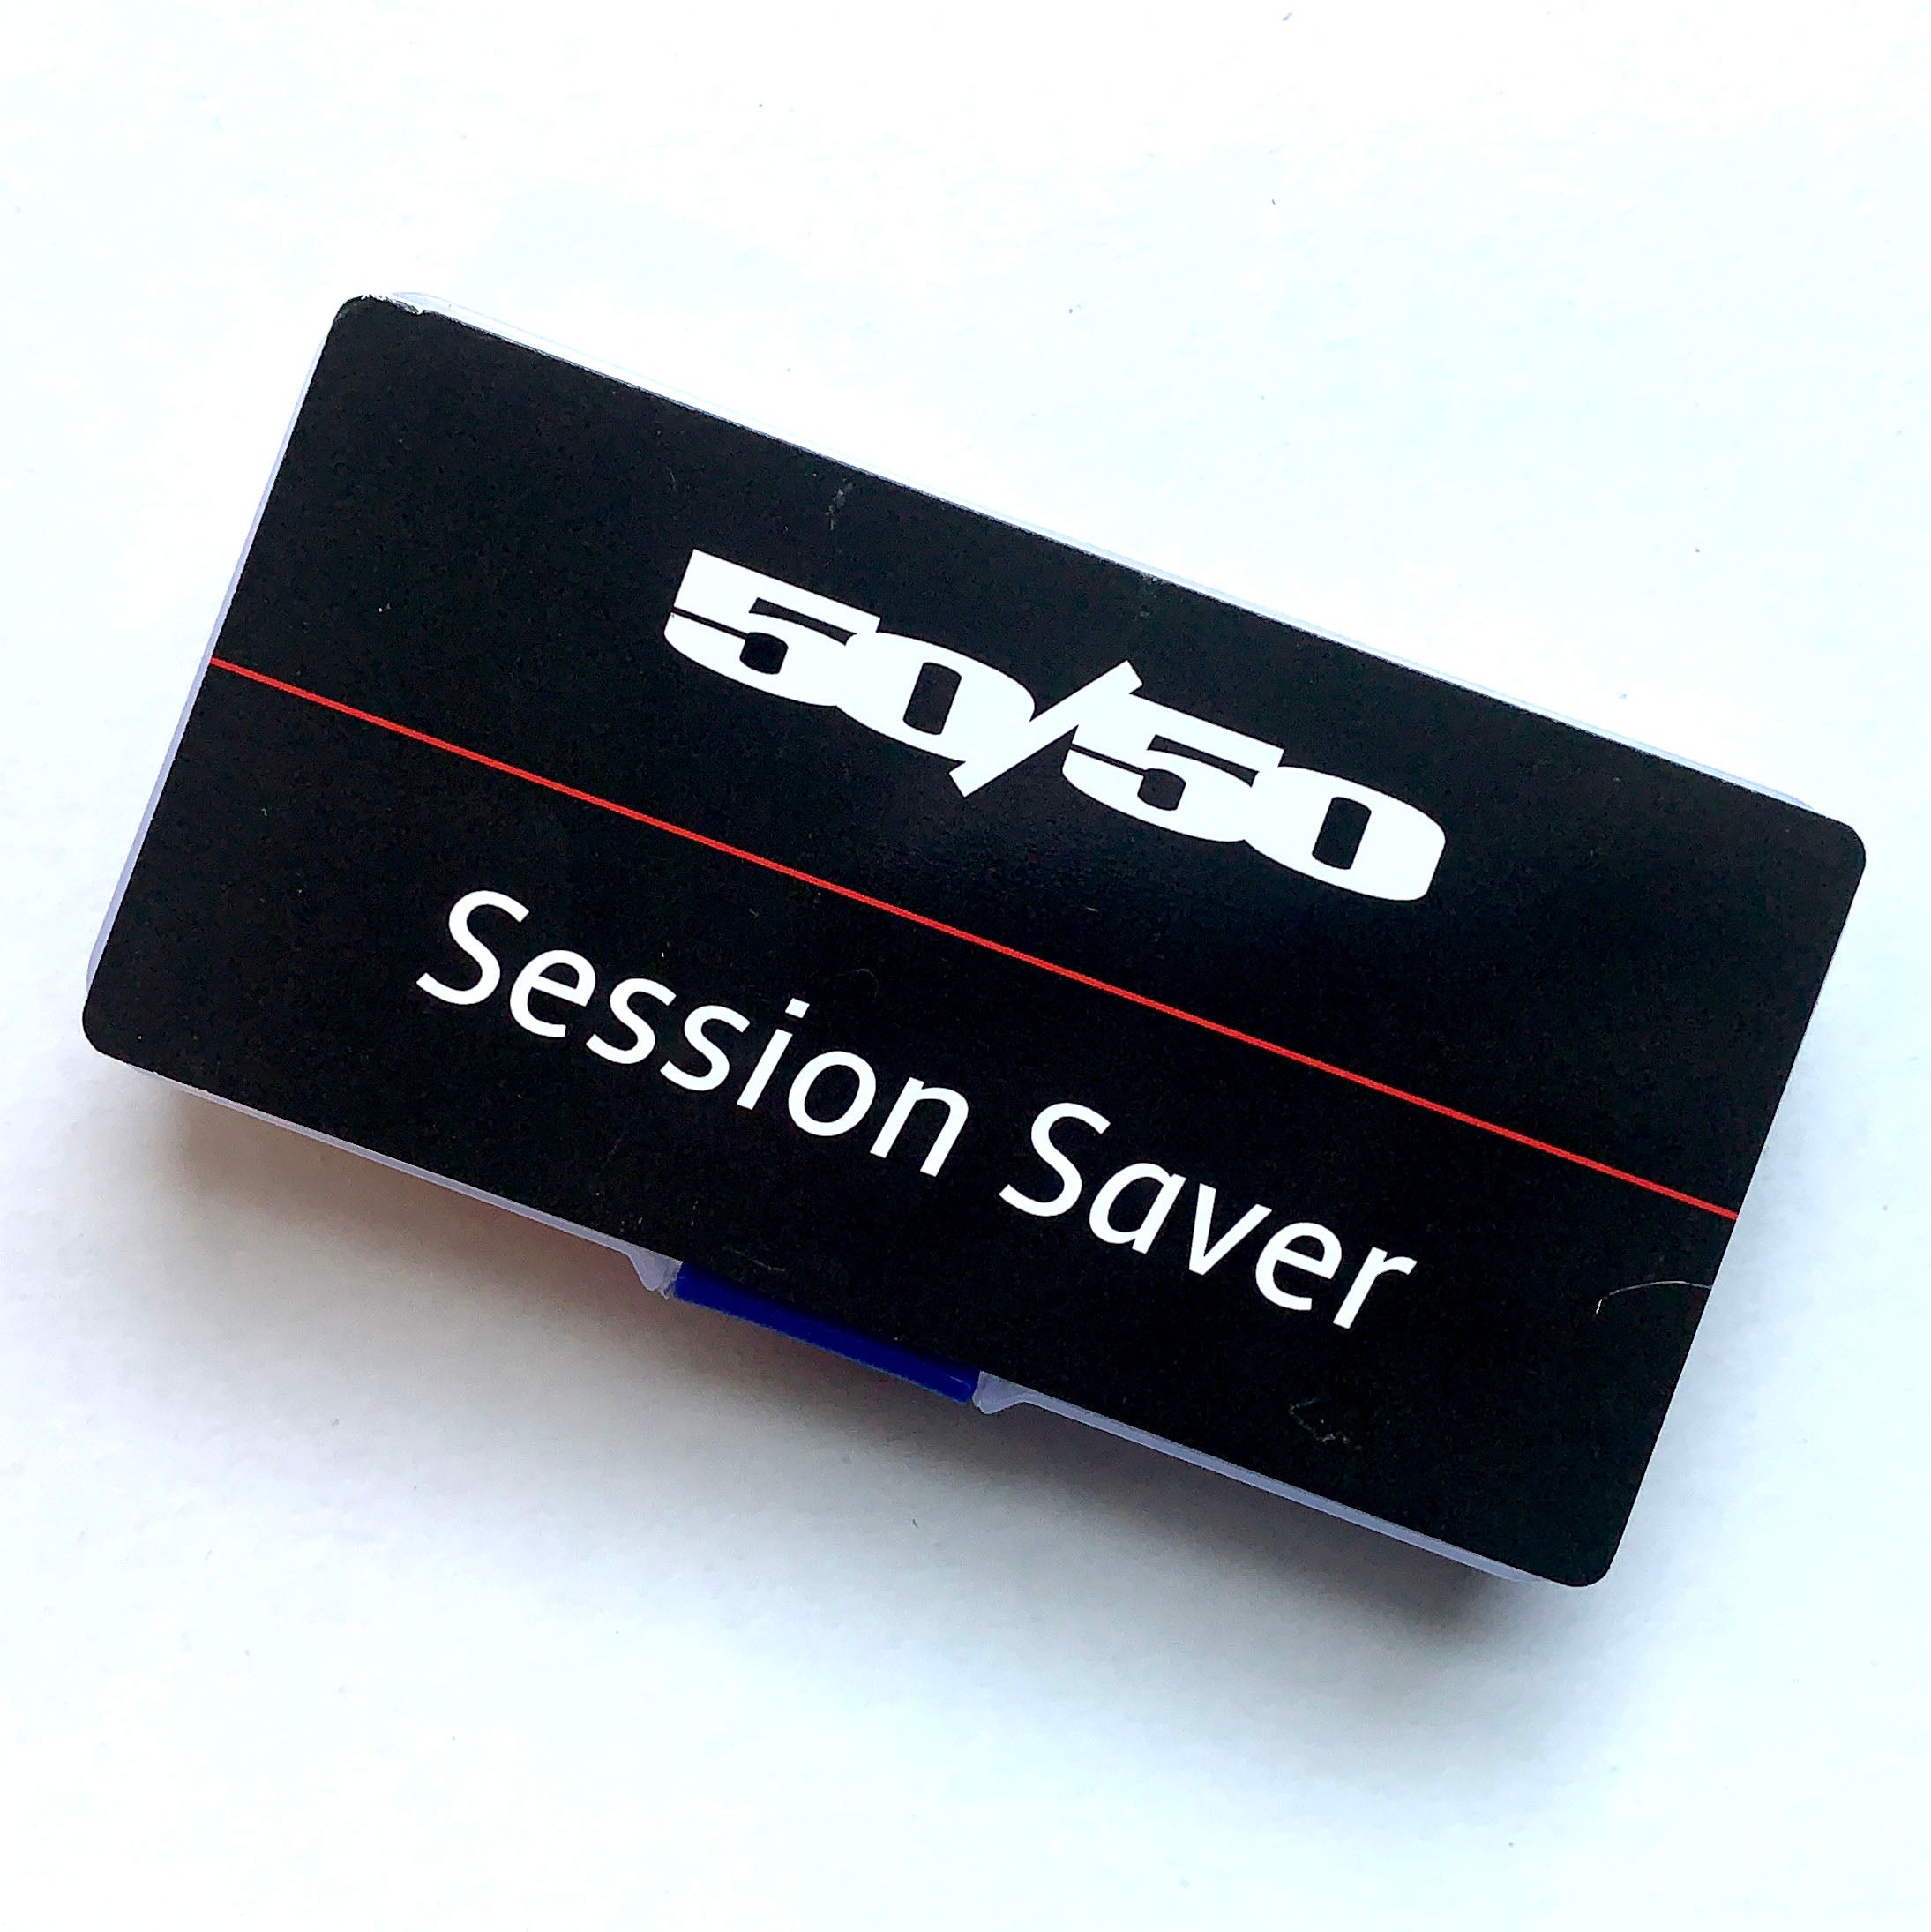 50/50 Session Saver parts kit